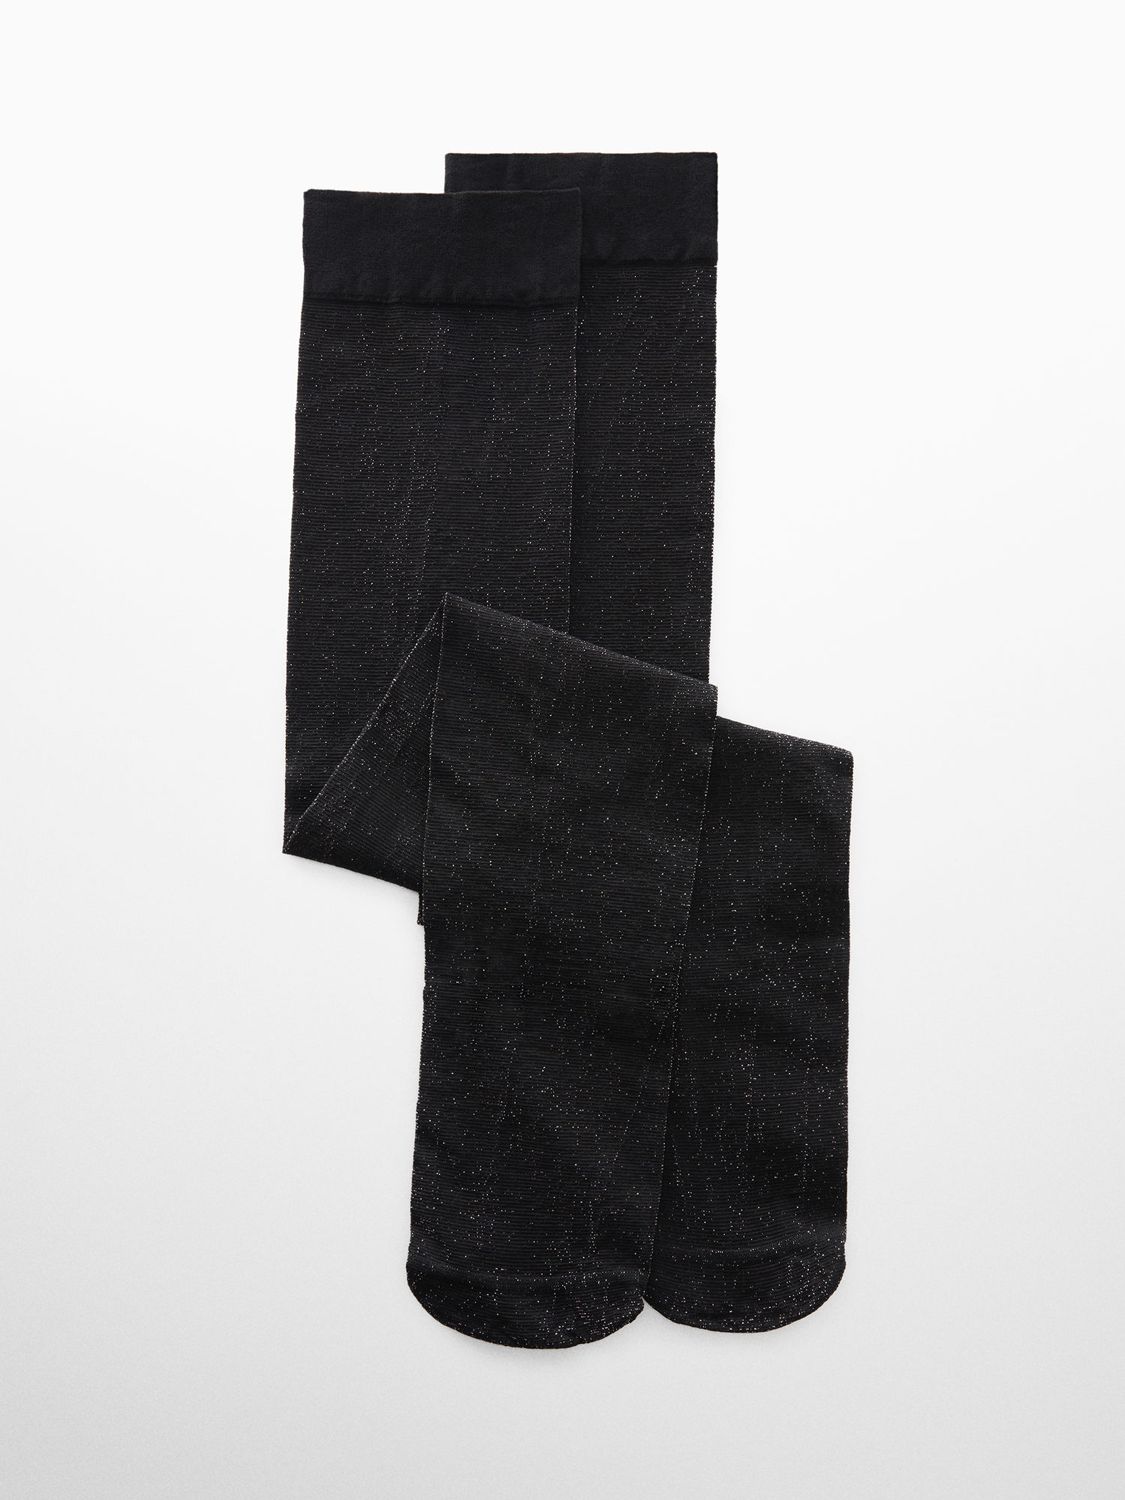 Mango Robin Metallic Knee Length Socks, Black, One Size at John Lewis ...